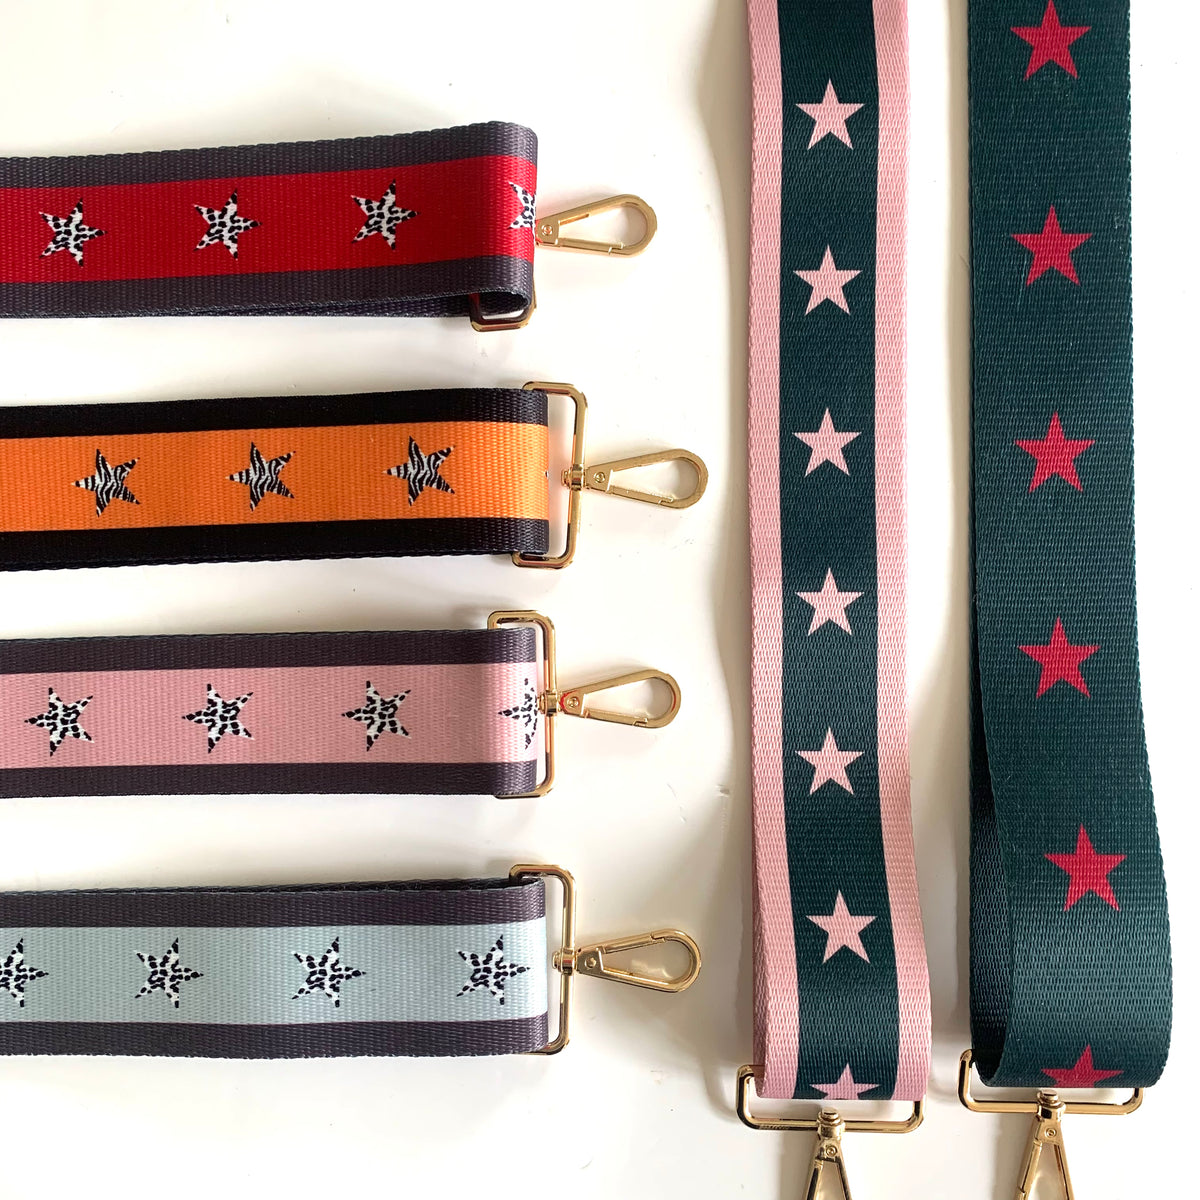 5cm Bag Strap - Metallic Black, Hot Pink, and Rose Gold Star Pattern